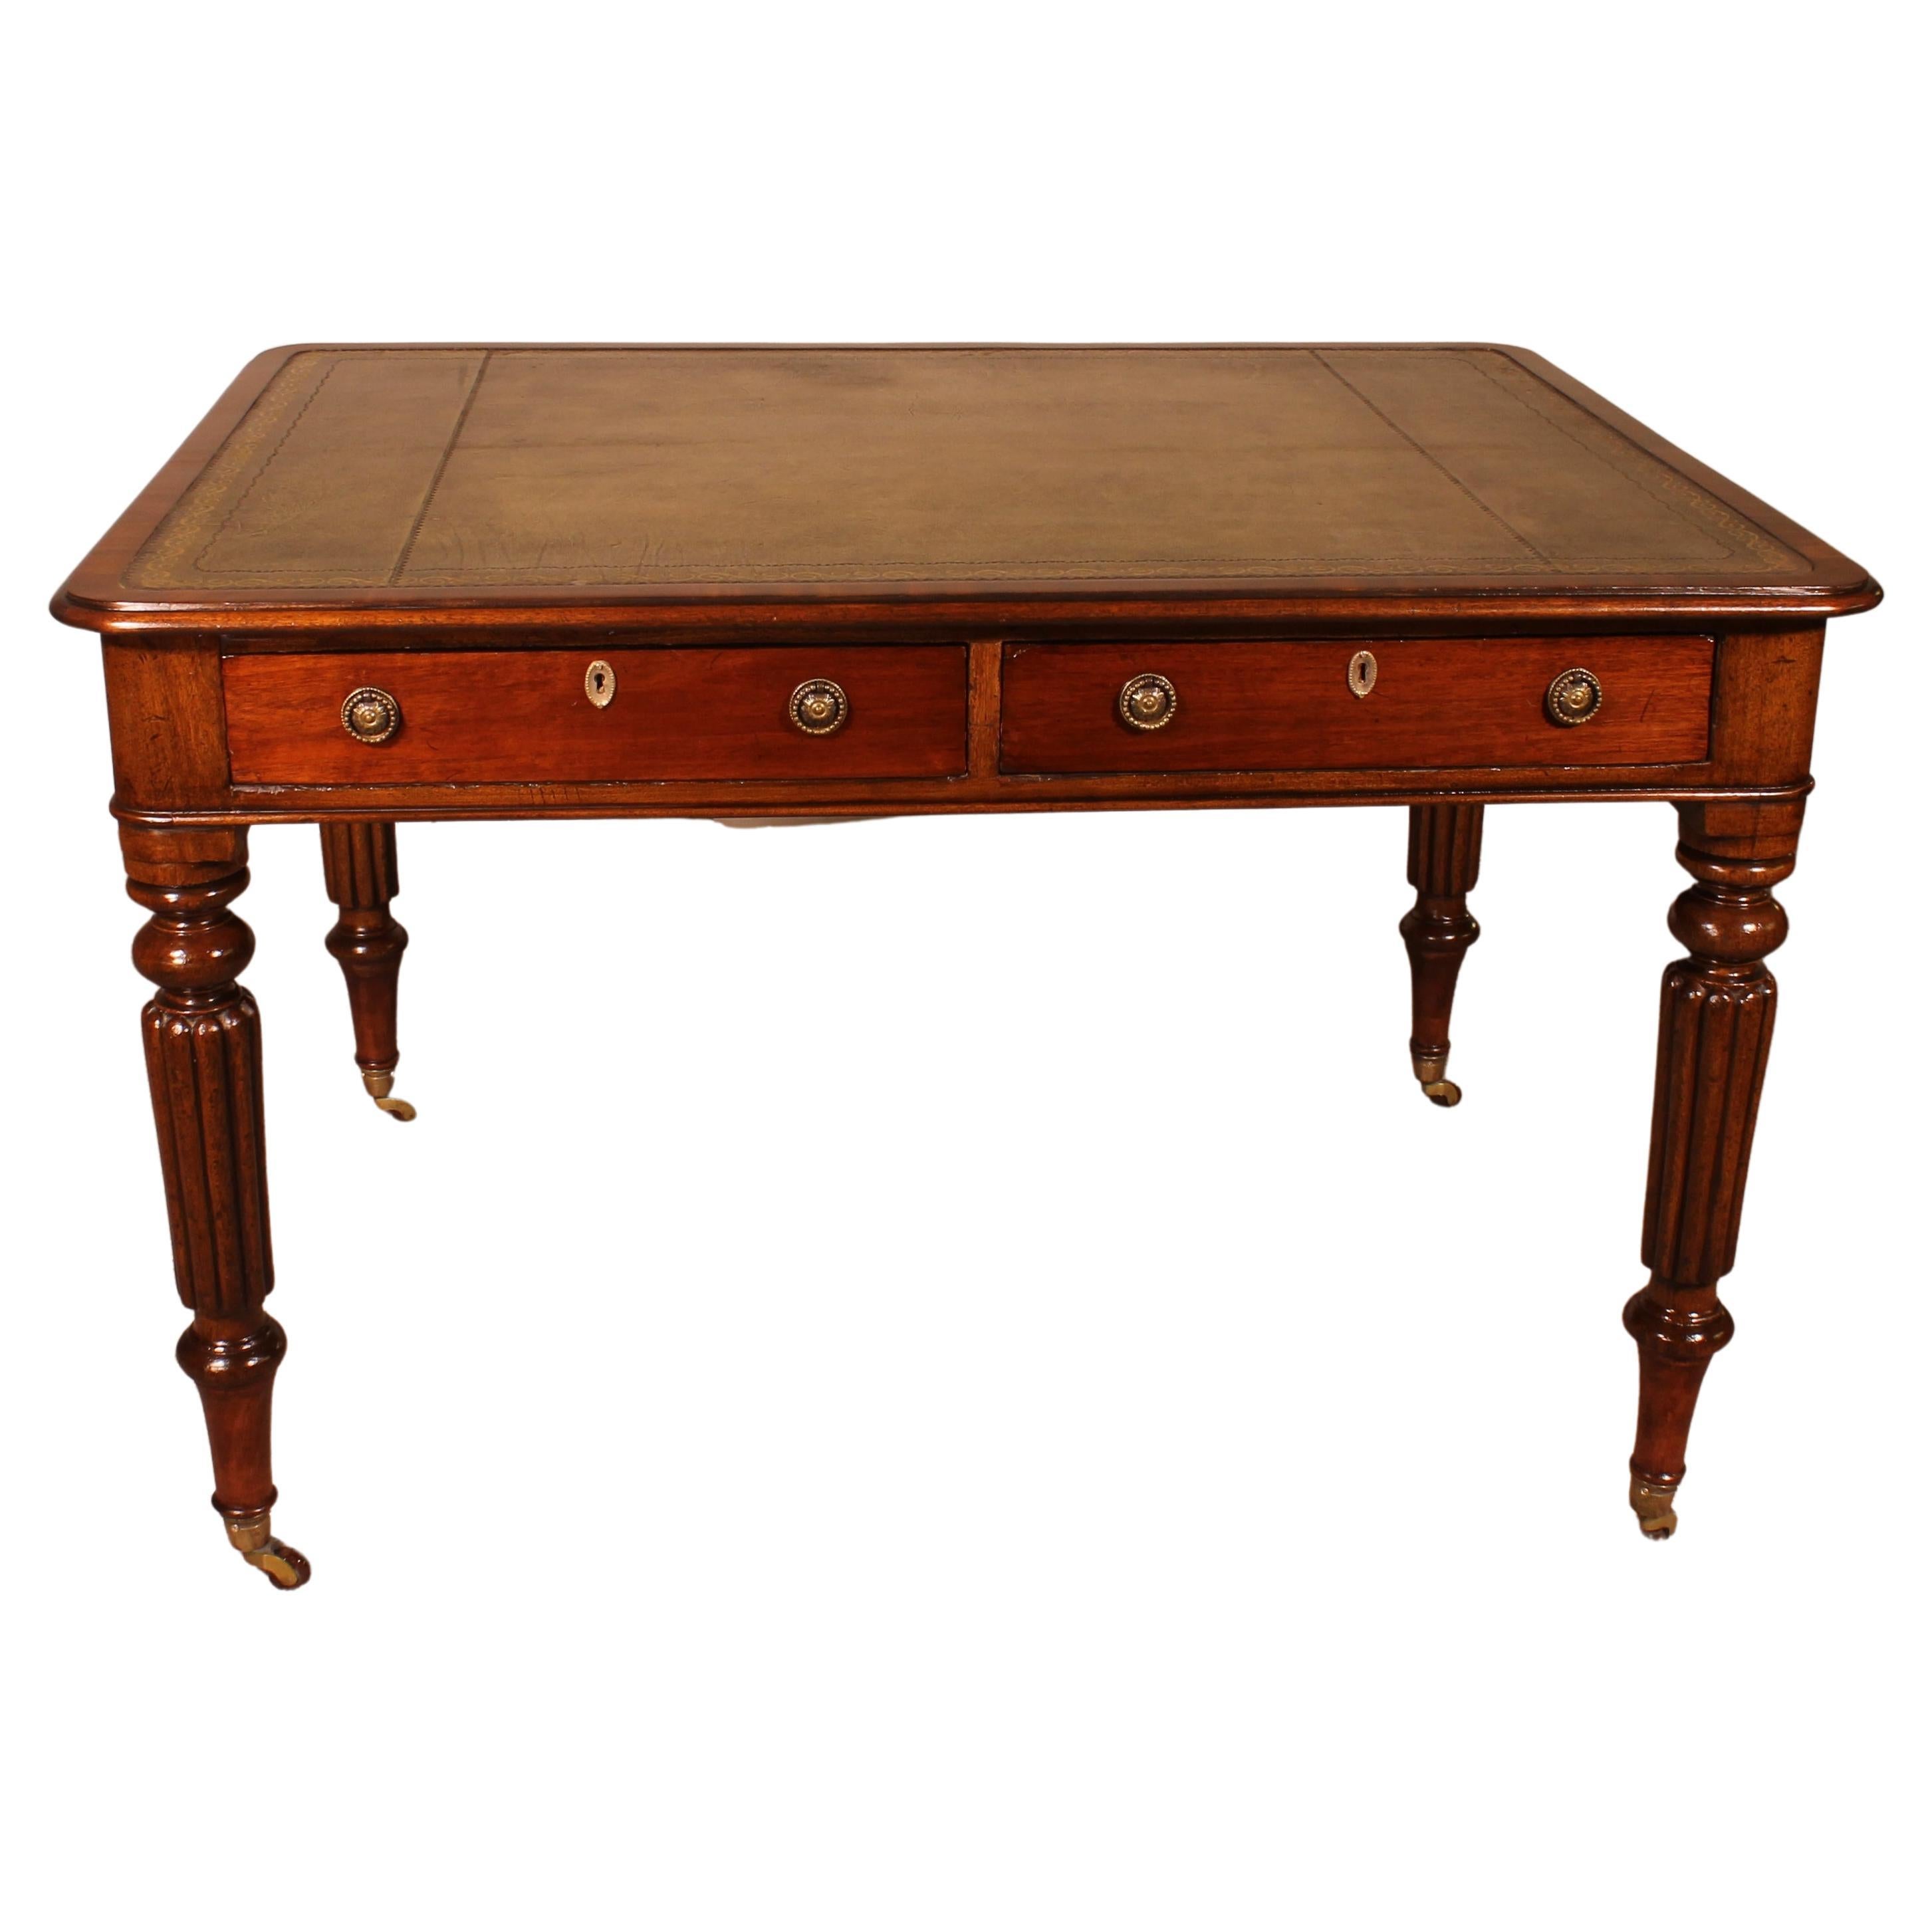 19th Century, Mahogany Partner Desk from England